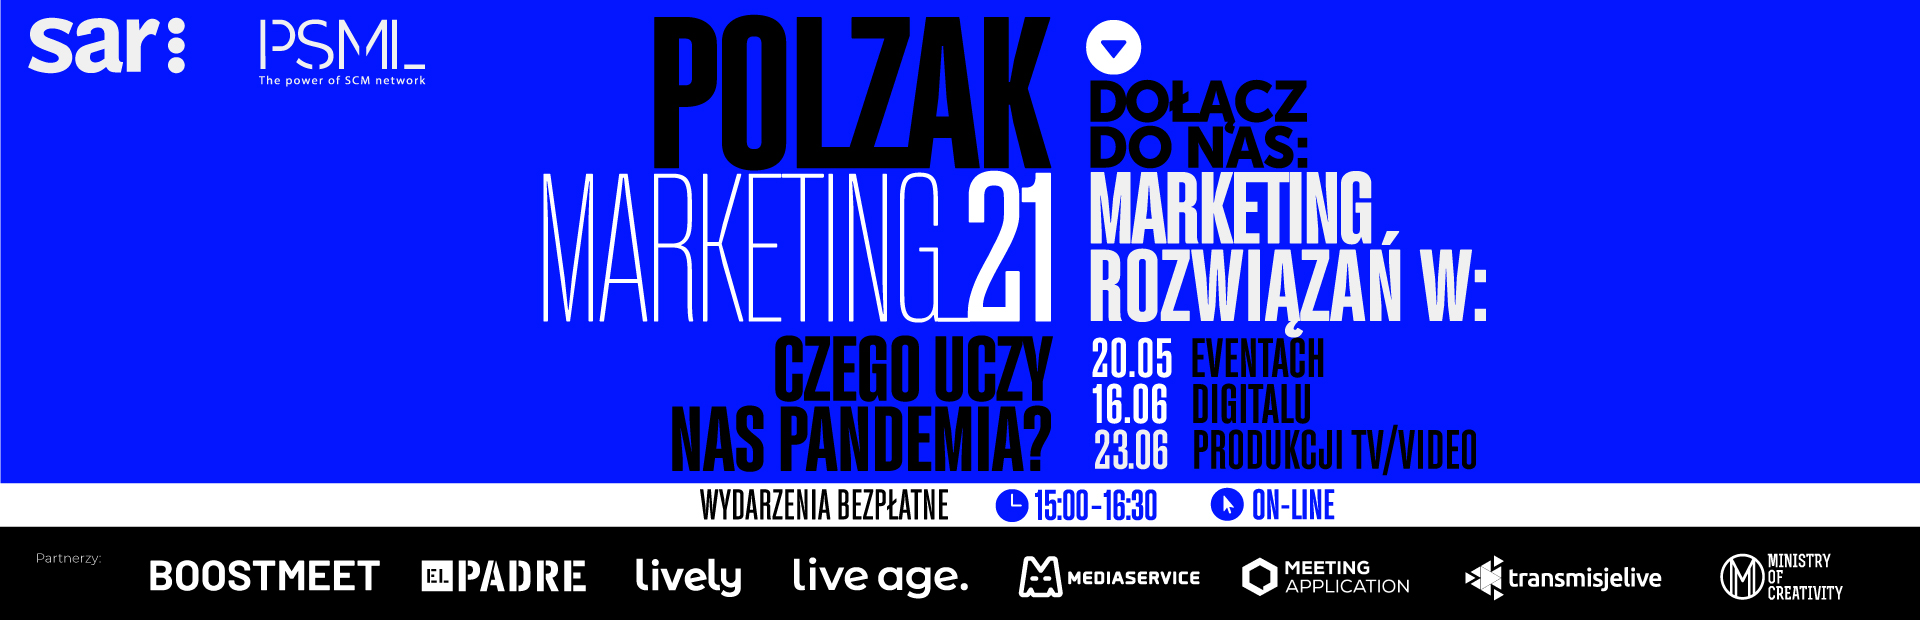 Polzak Marketing 2 wydarzenie